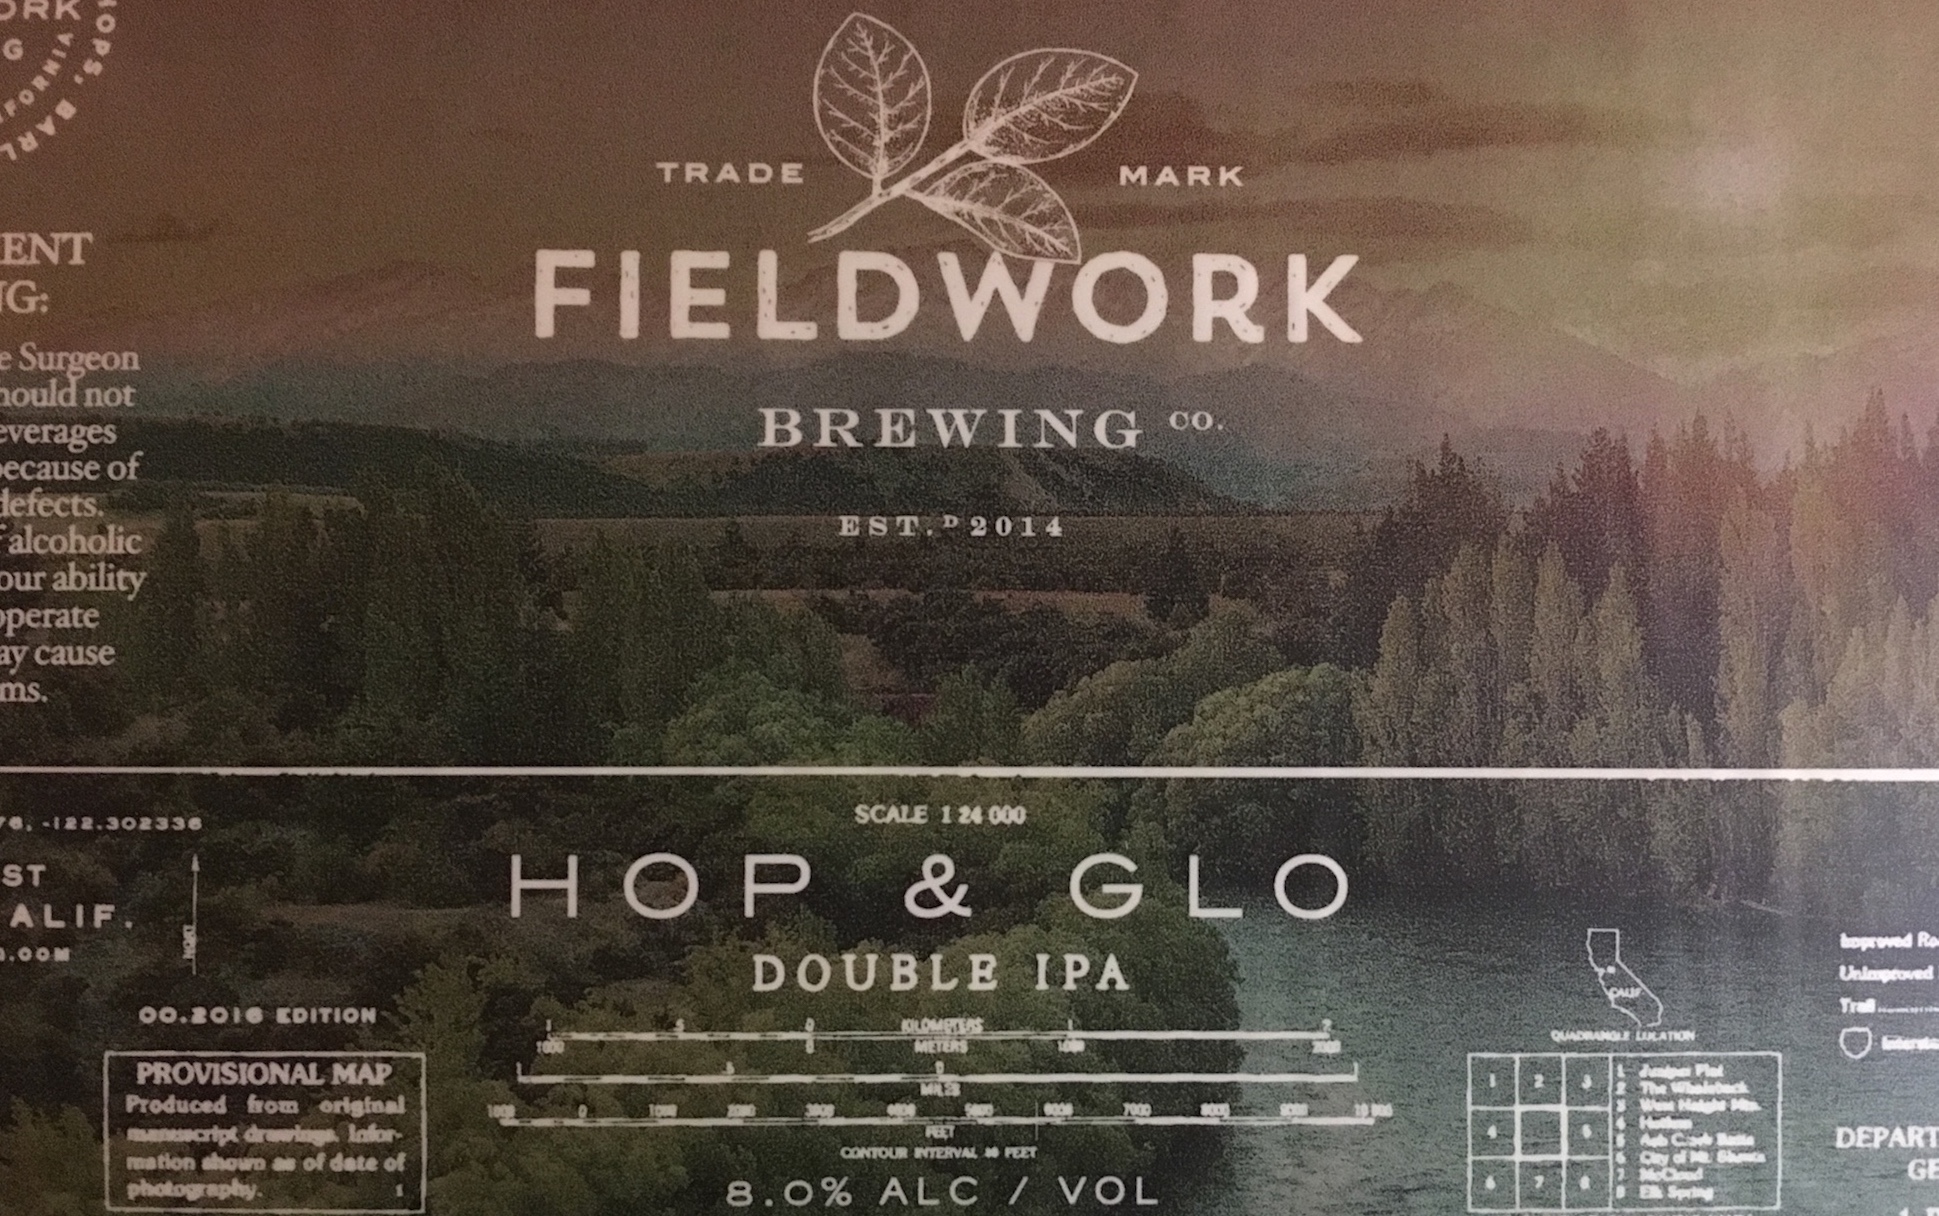 Fieldwork Brewing Co. | Hop & Glo Double IPA